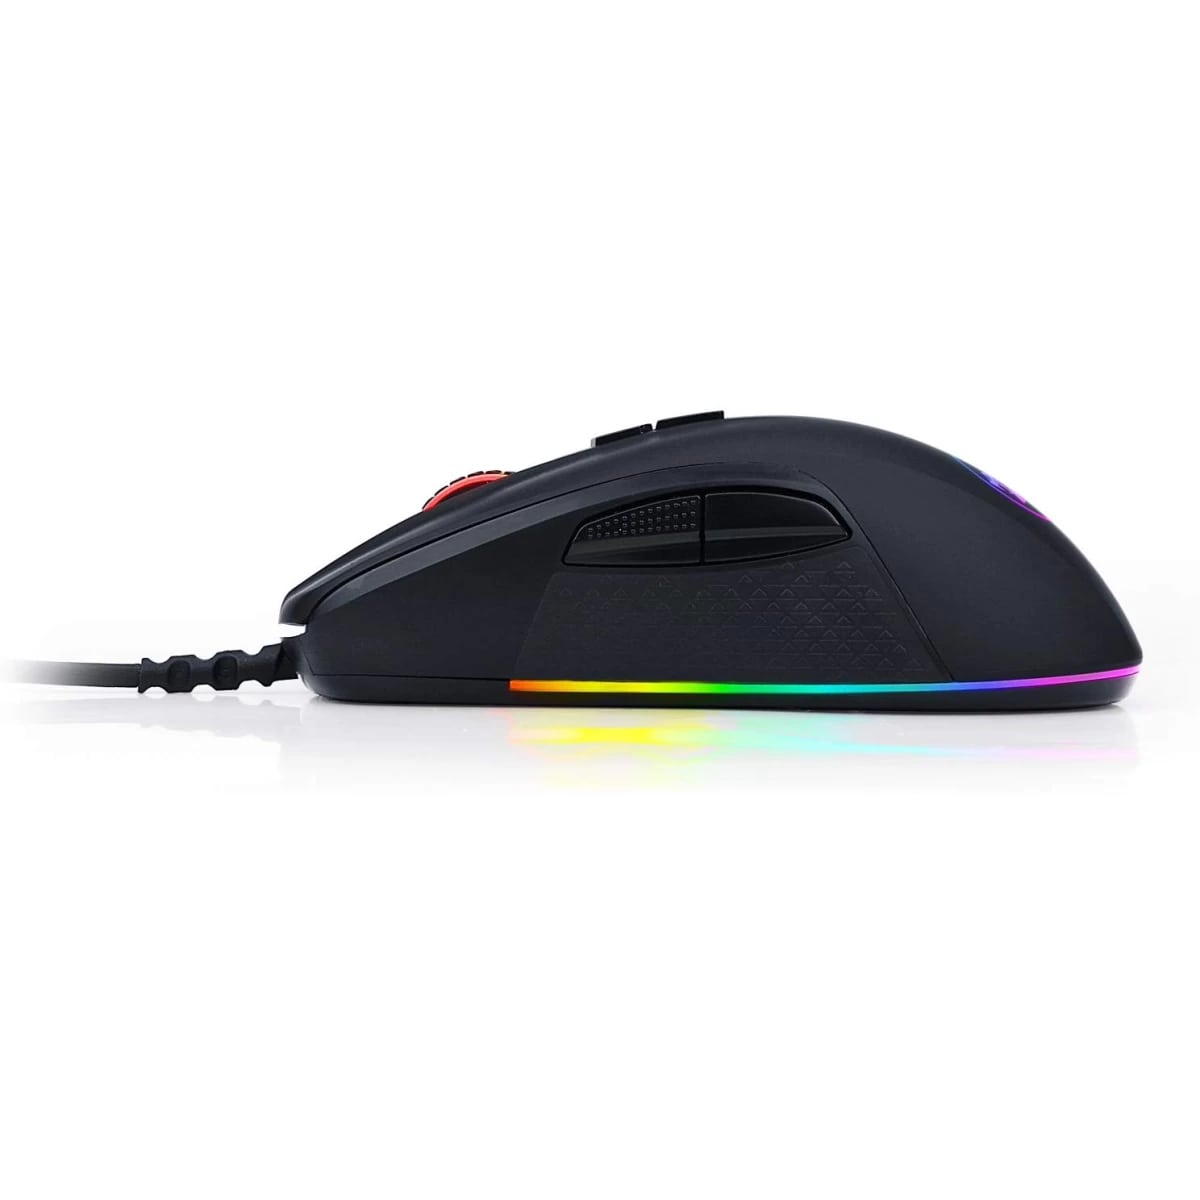 Redragon M718 STORMRAGE RGB Gaming Mouse